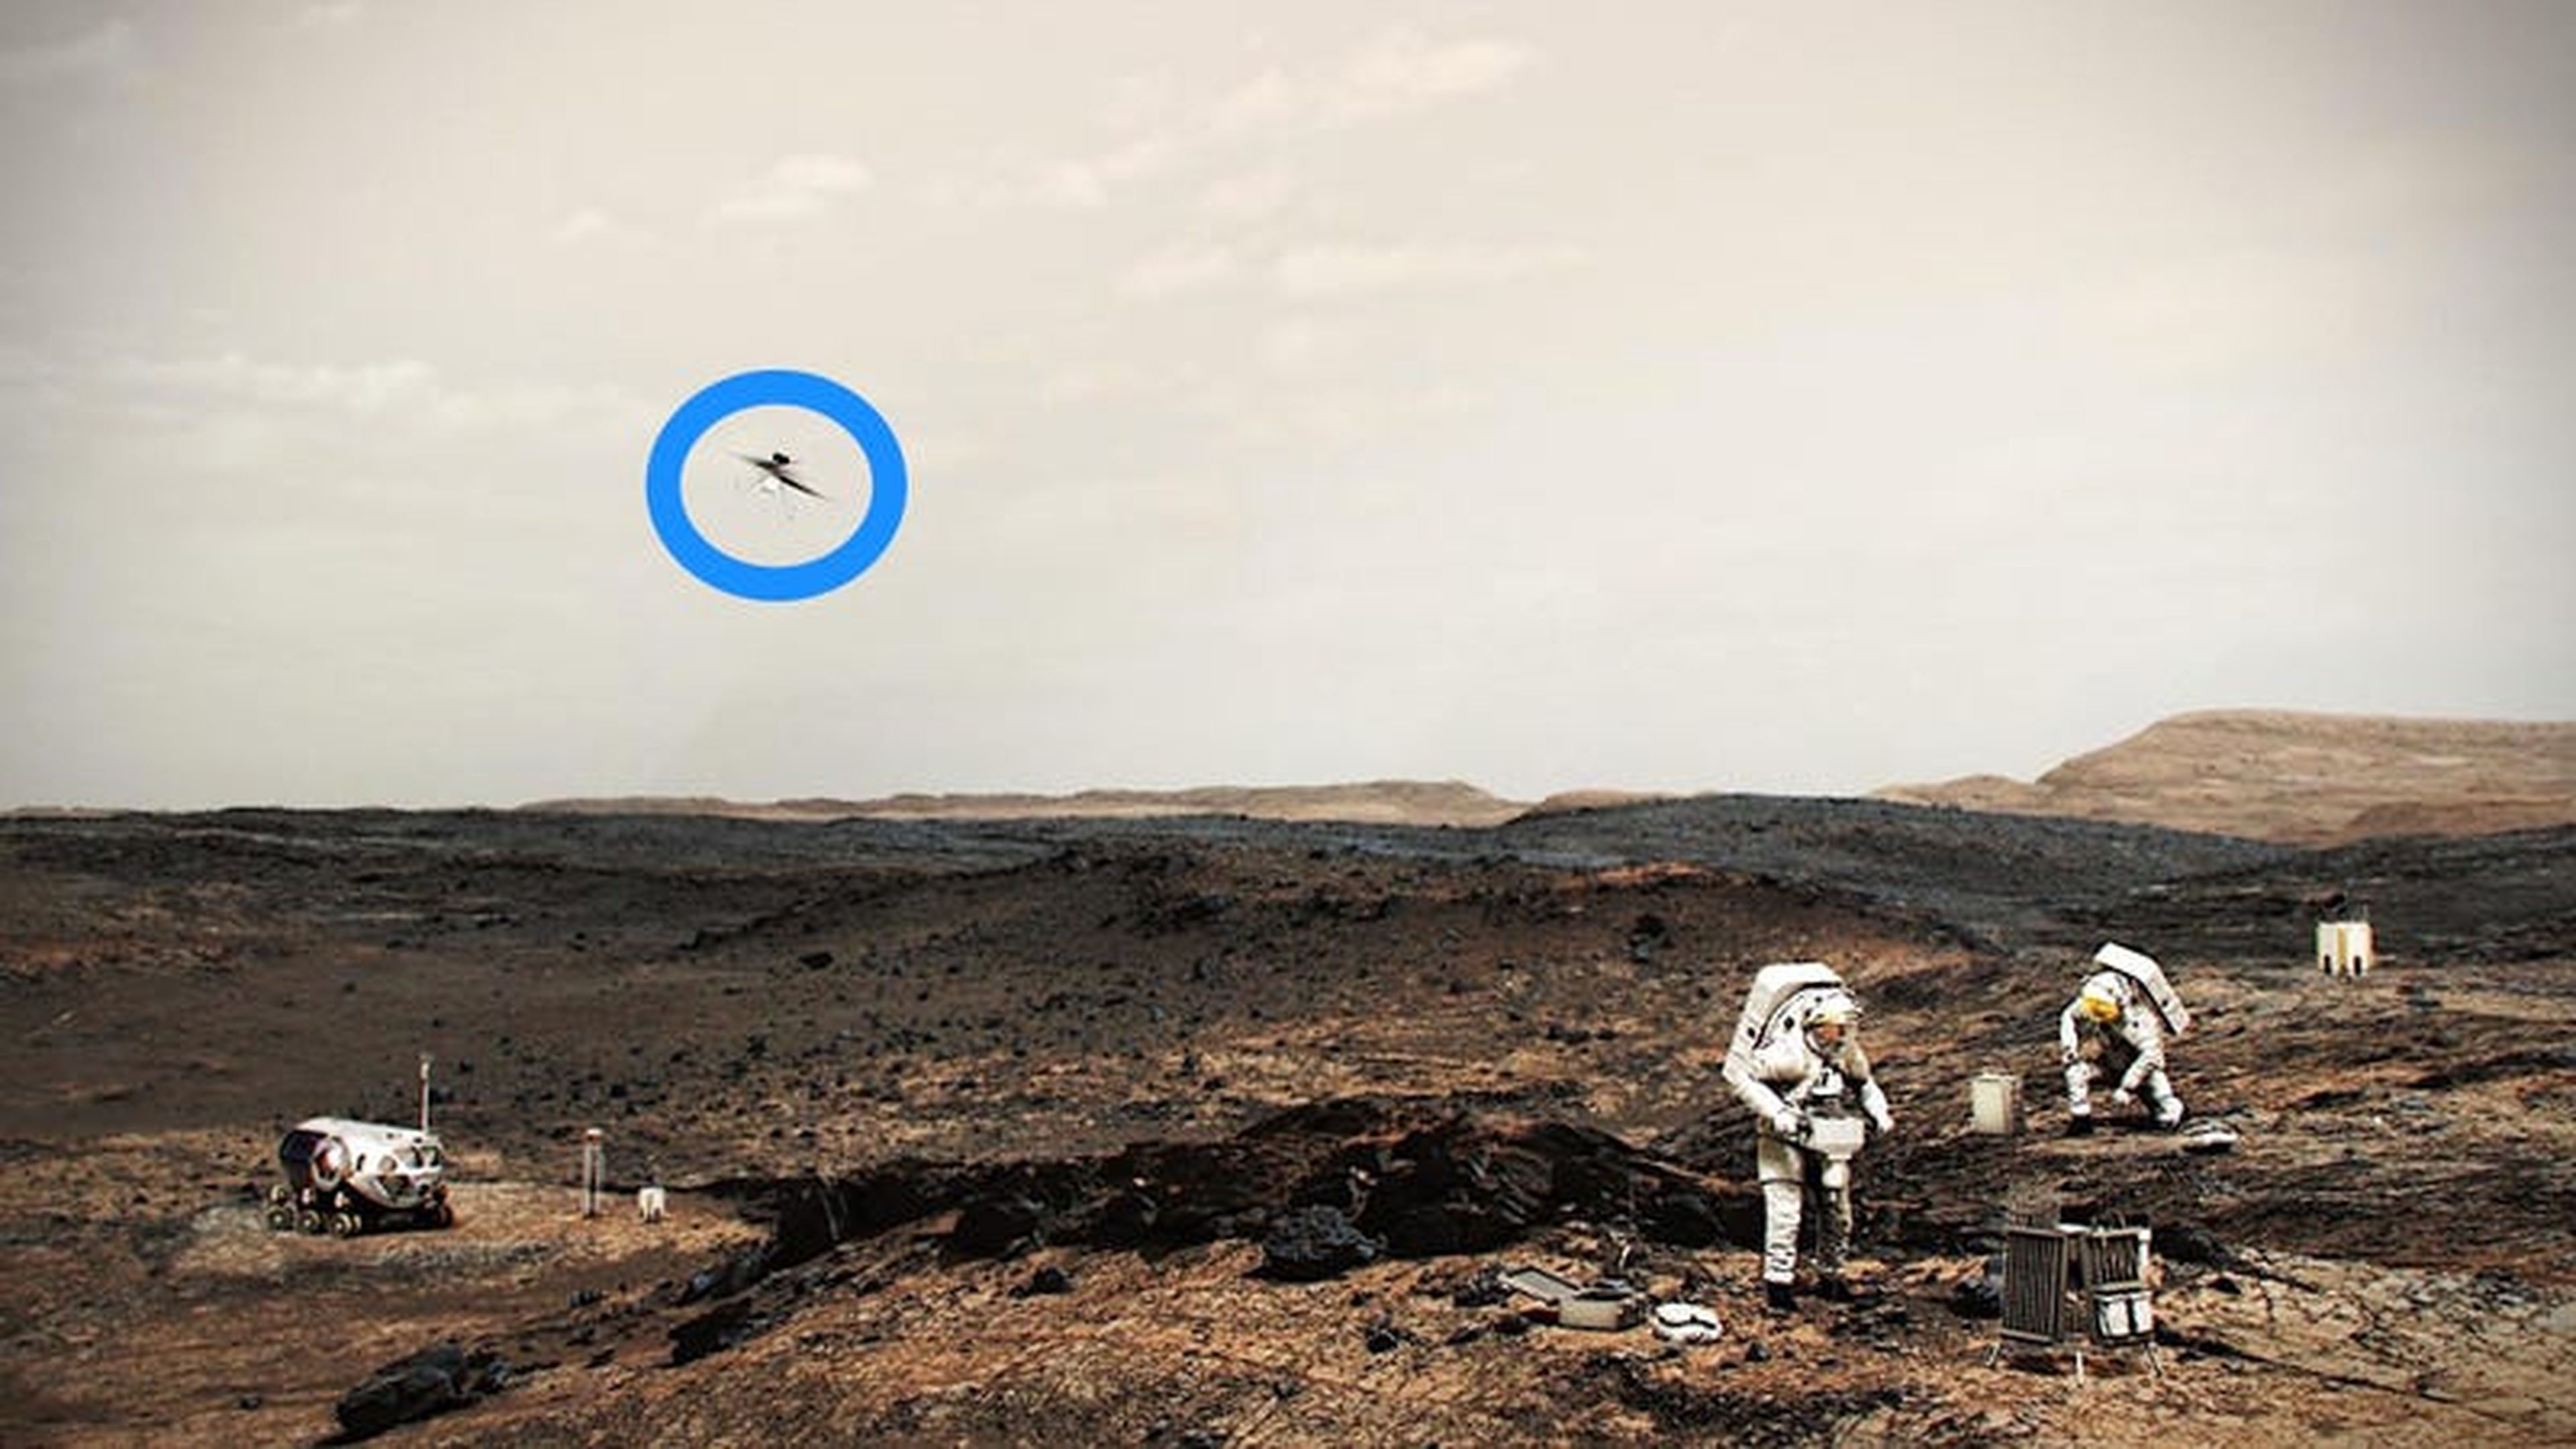 Ilustración de astronautas de la NASA trabajando en la superficie de Marte, con un helicóptero del mismo tipo que Ingenuity volando hacia la izquierda.